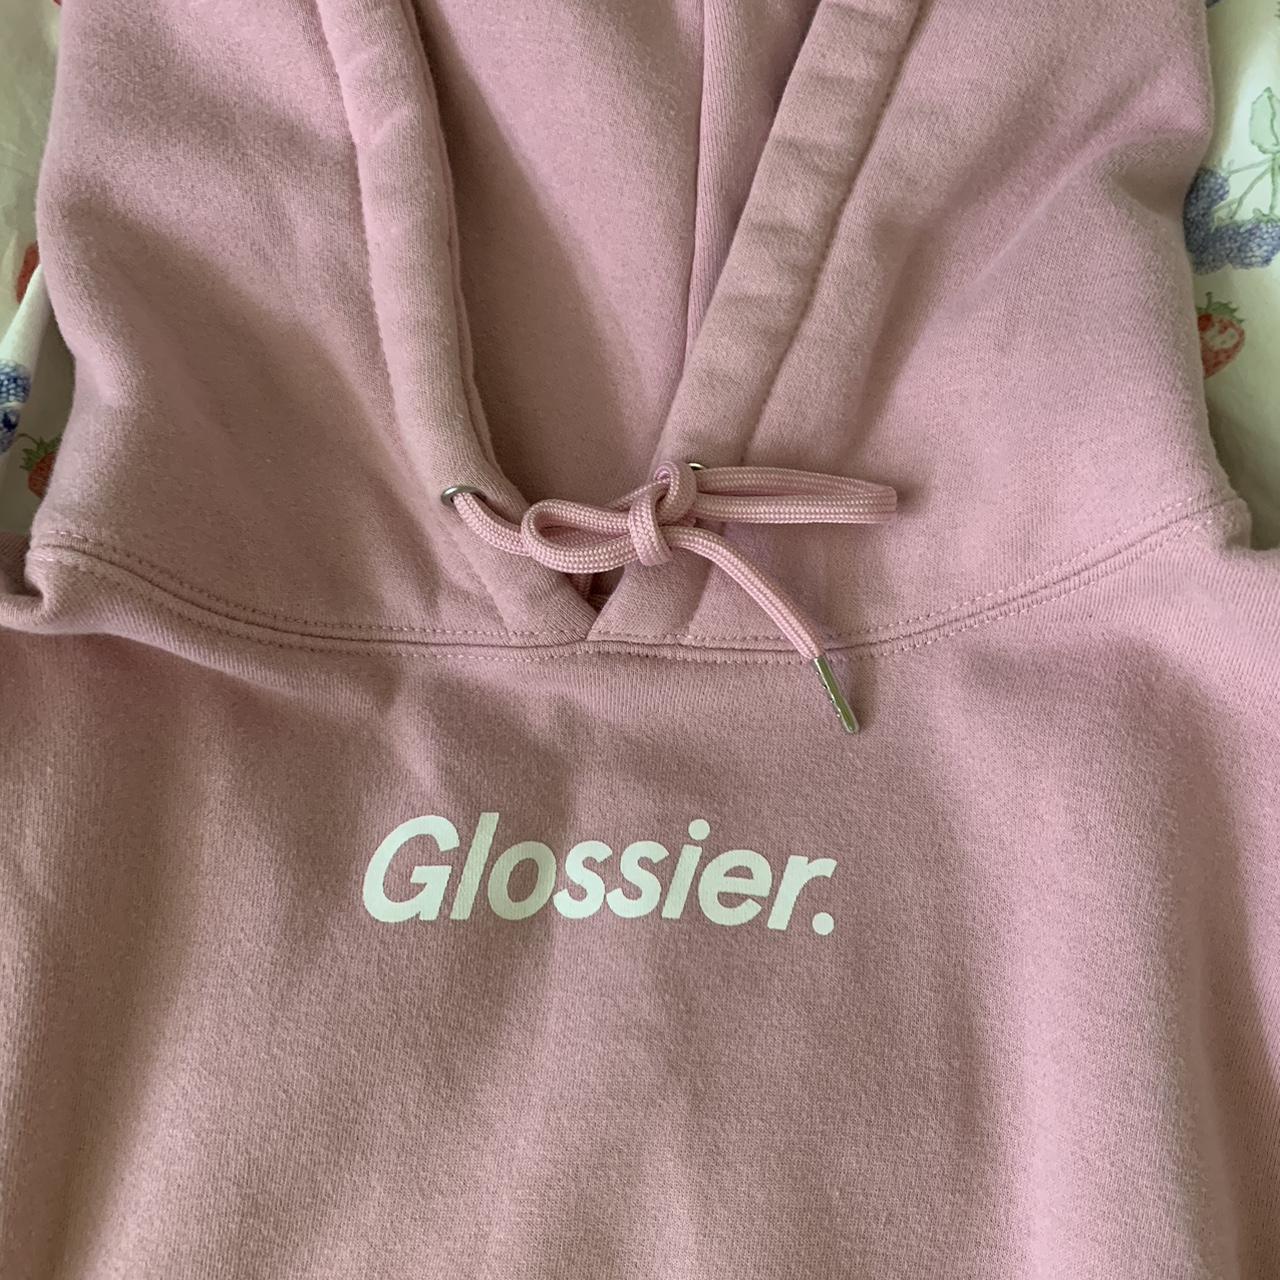 Glossier Women's Pink Hoodie